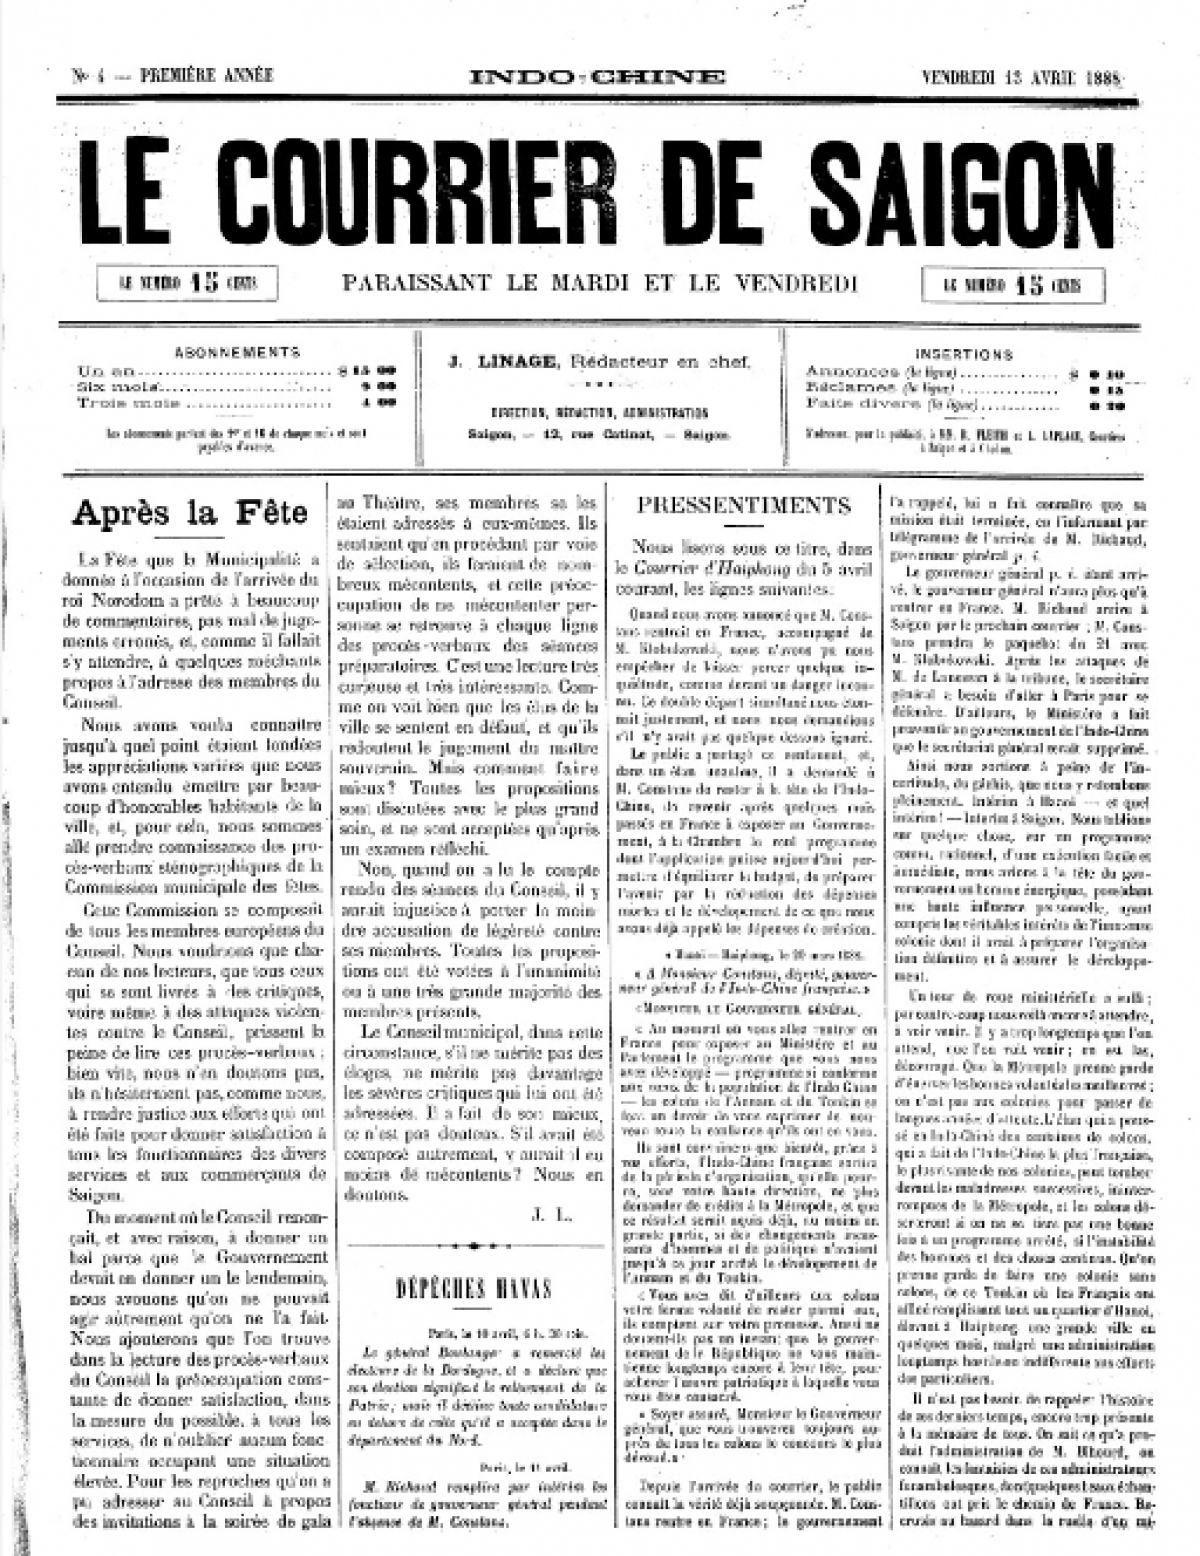 Tờ Le Courrier de Saigon - Tây Cống nhựt báo. (Nguồn: Thư viện Quốc gia Pháp)